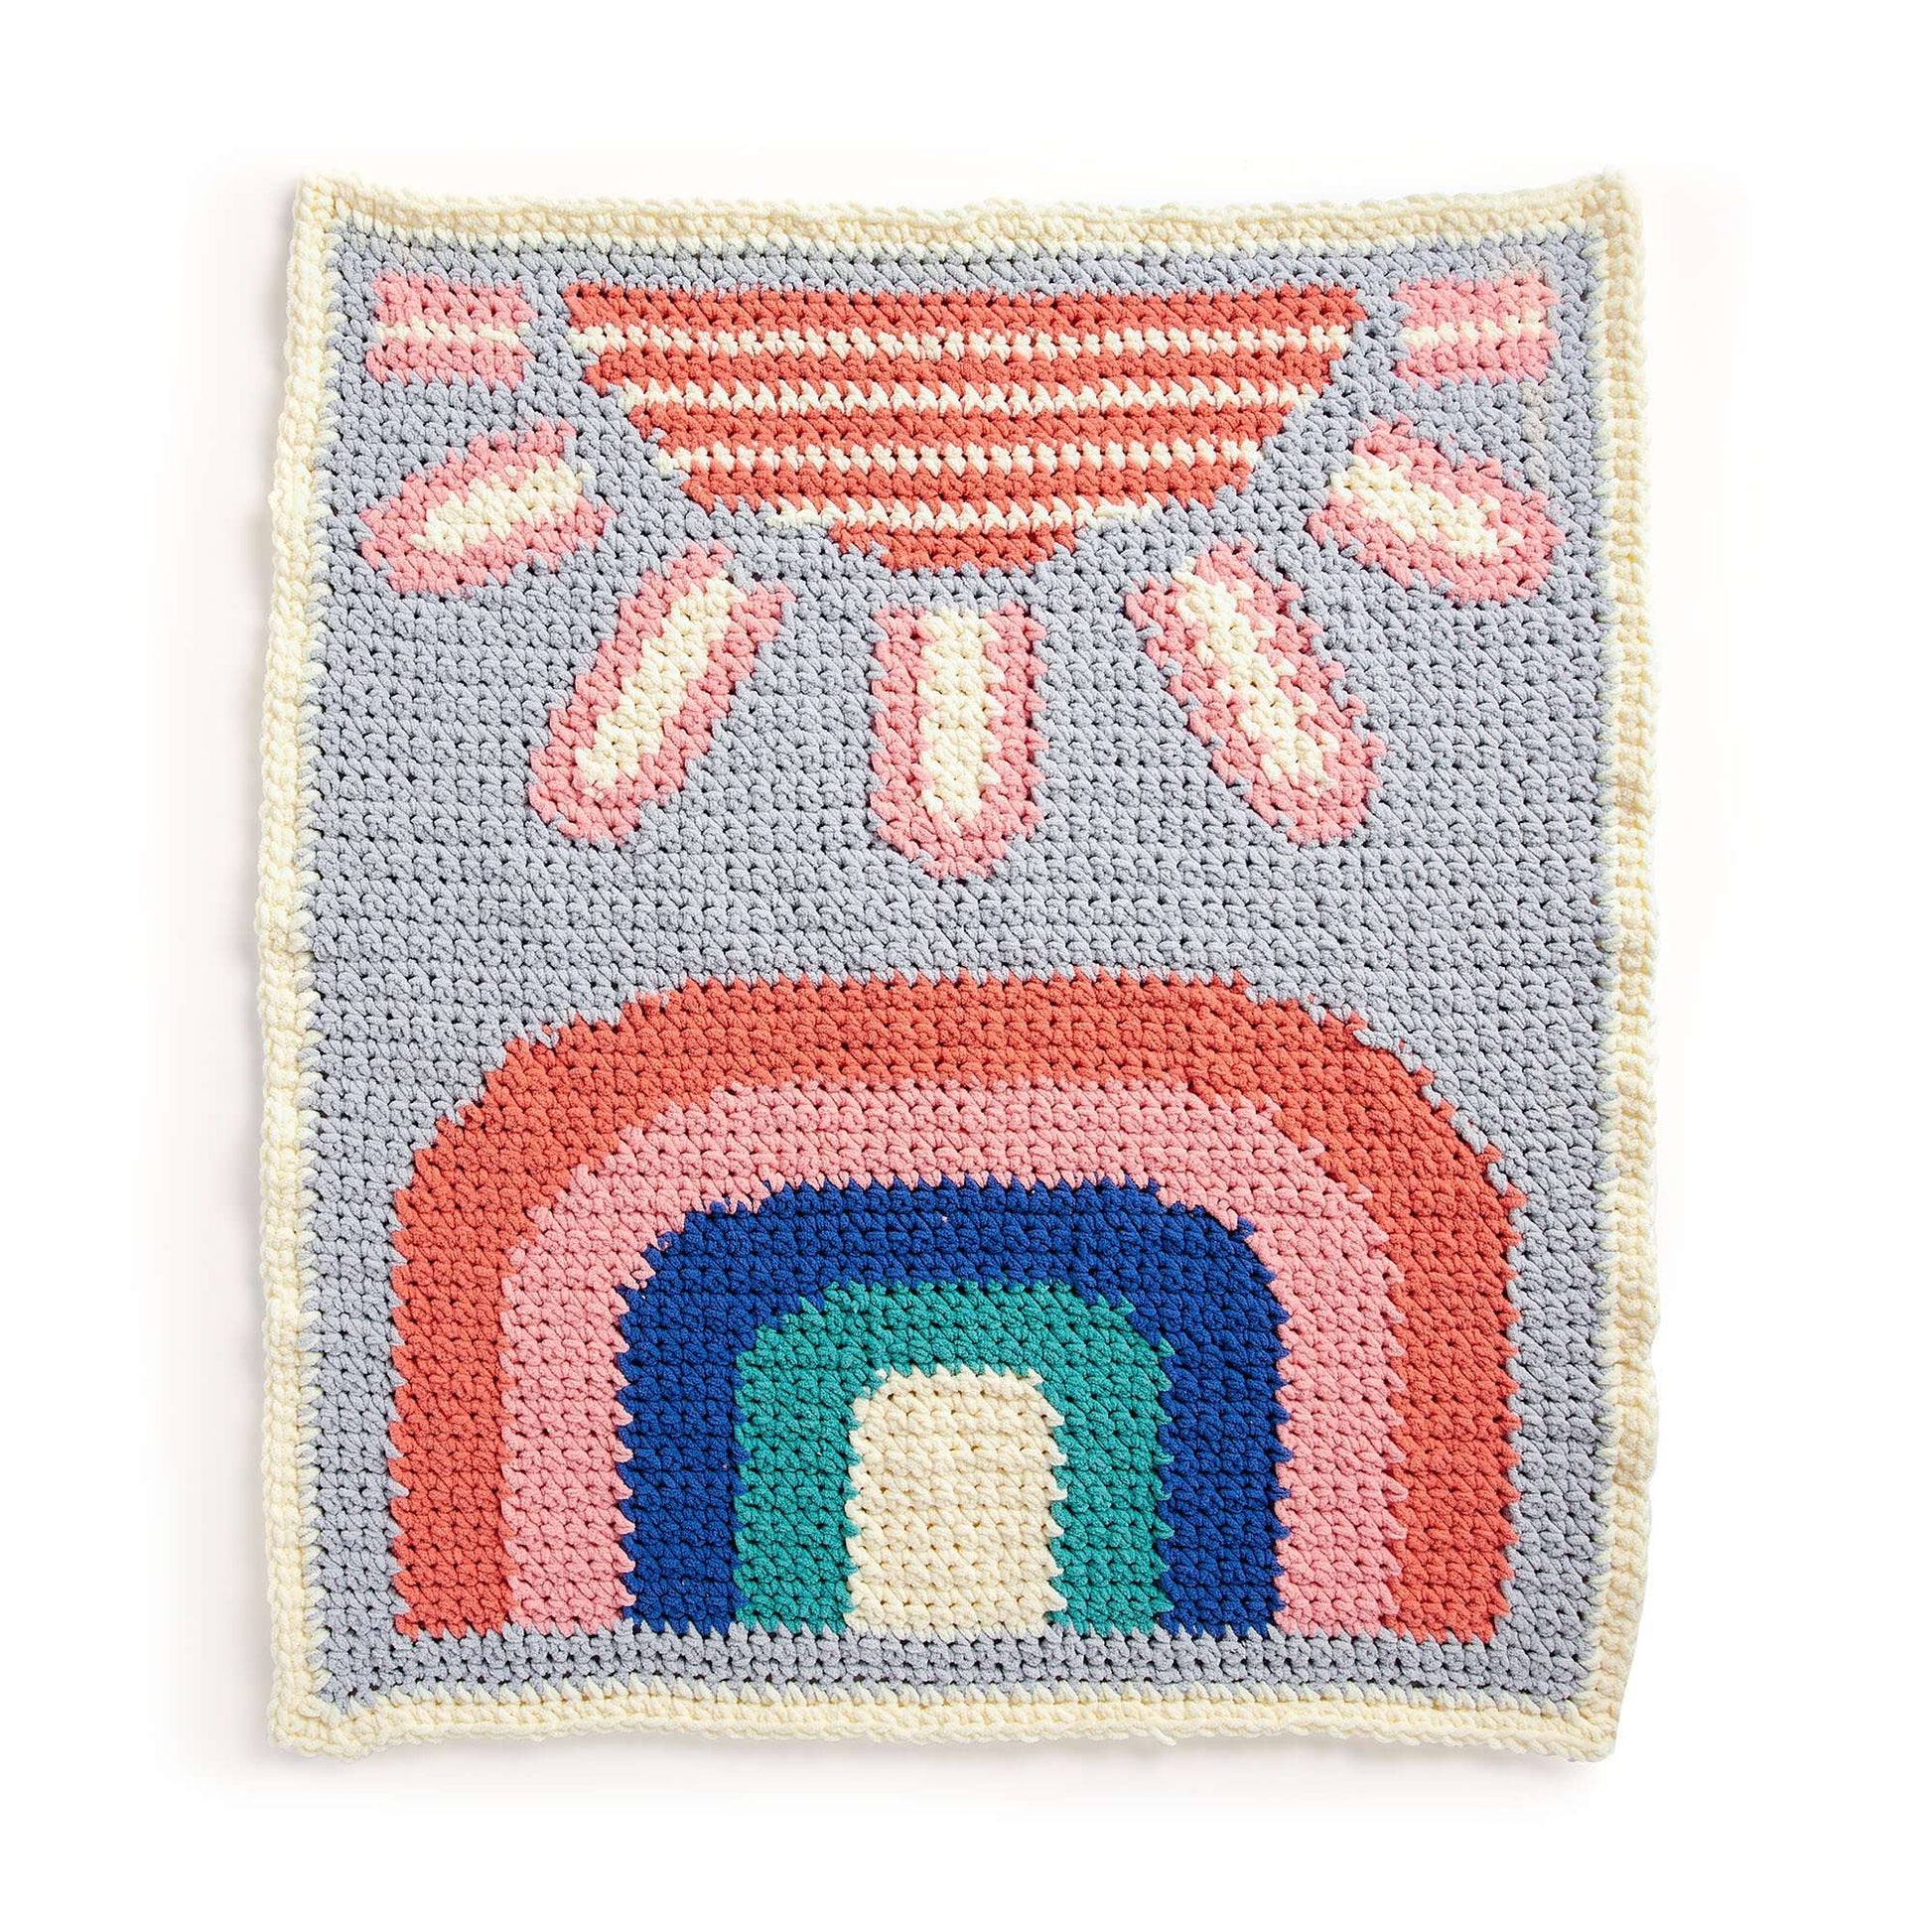 Free Bernat Good Morning Sunshine Crochet Baby Blanket Pattern